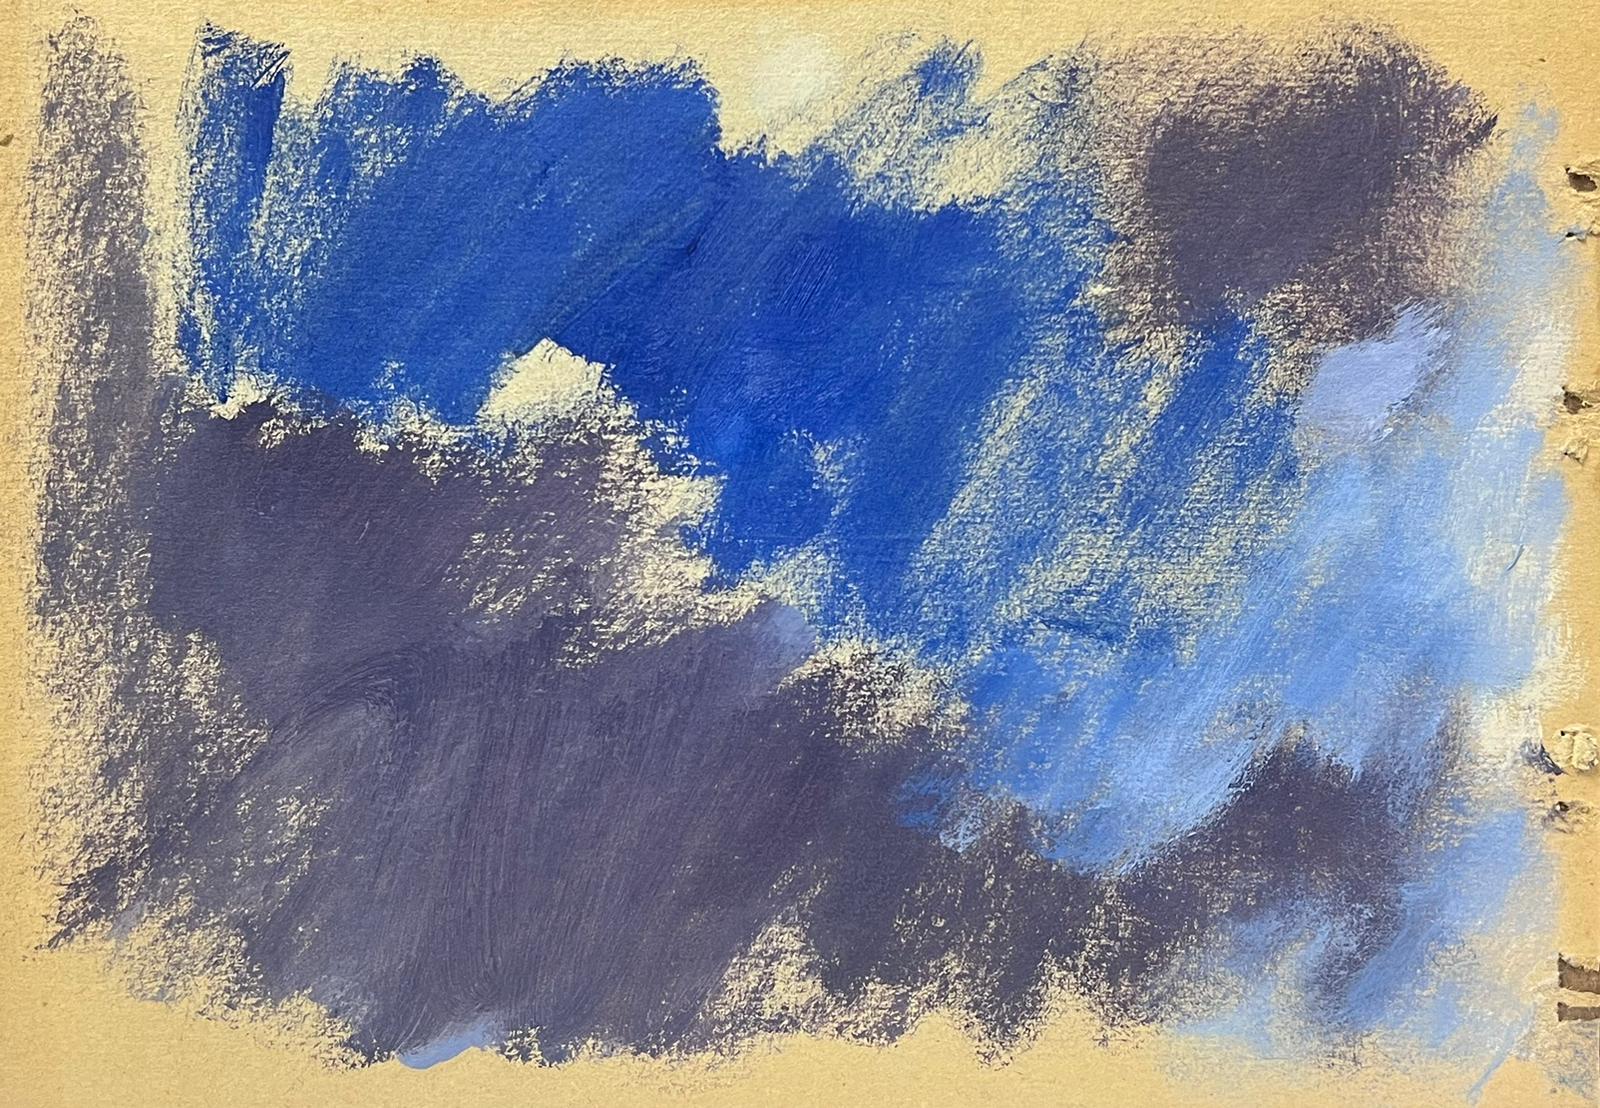 Elisabeth Hahn Abstract Painting – Deutsche modernistisches Ölgemälde des 20. Jahrhunderts, Blaues und graues Himmelslandschaftsbild